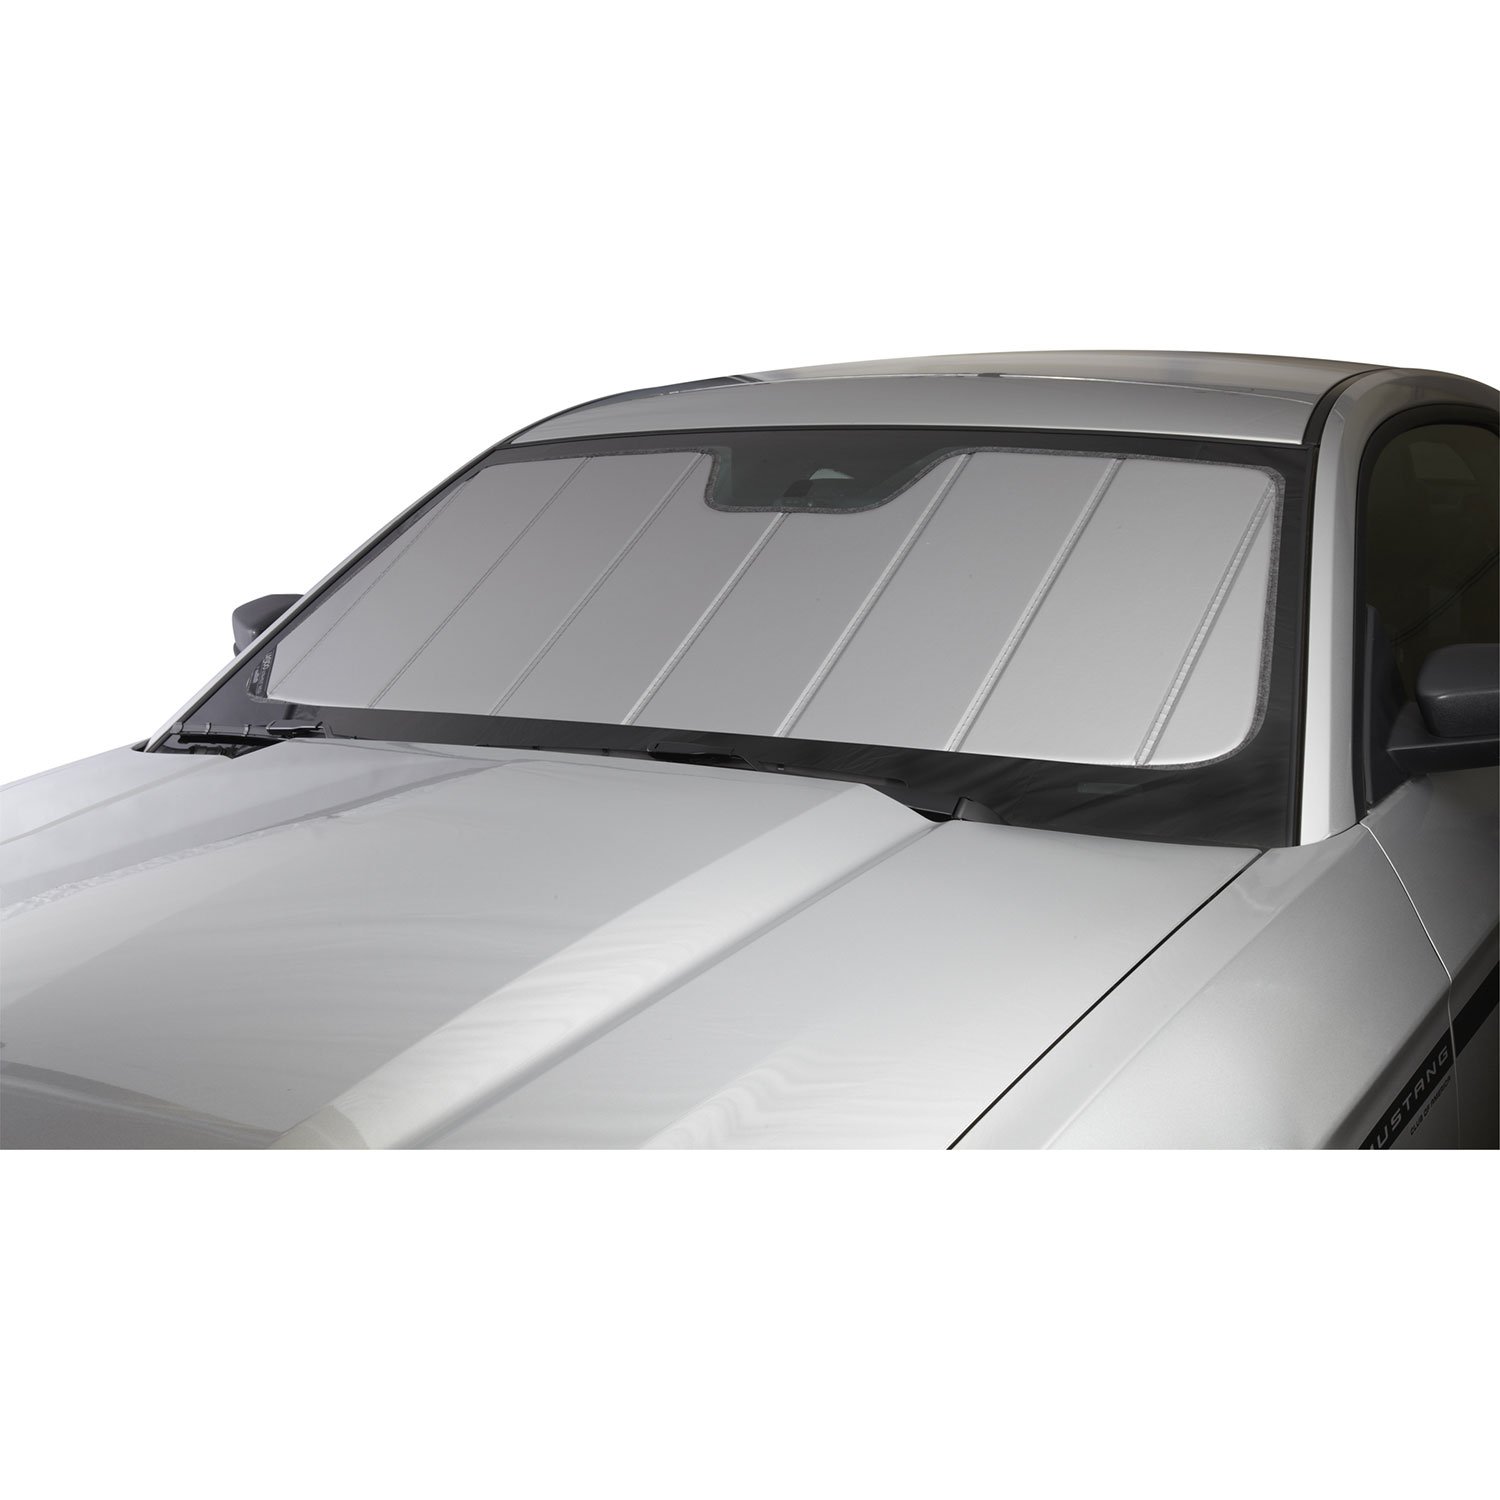 Covercraft UVS100 Sonnenschutz | UV11085SV | kompatibel mit ausgewählten Ford F-150 Modellen, Silber von Covercraft